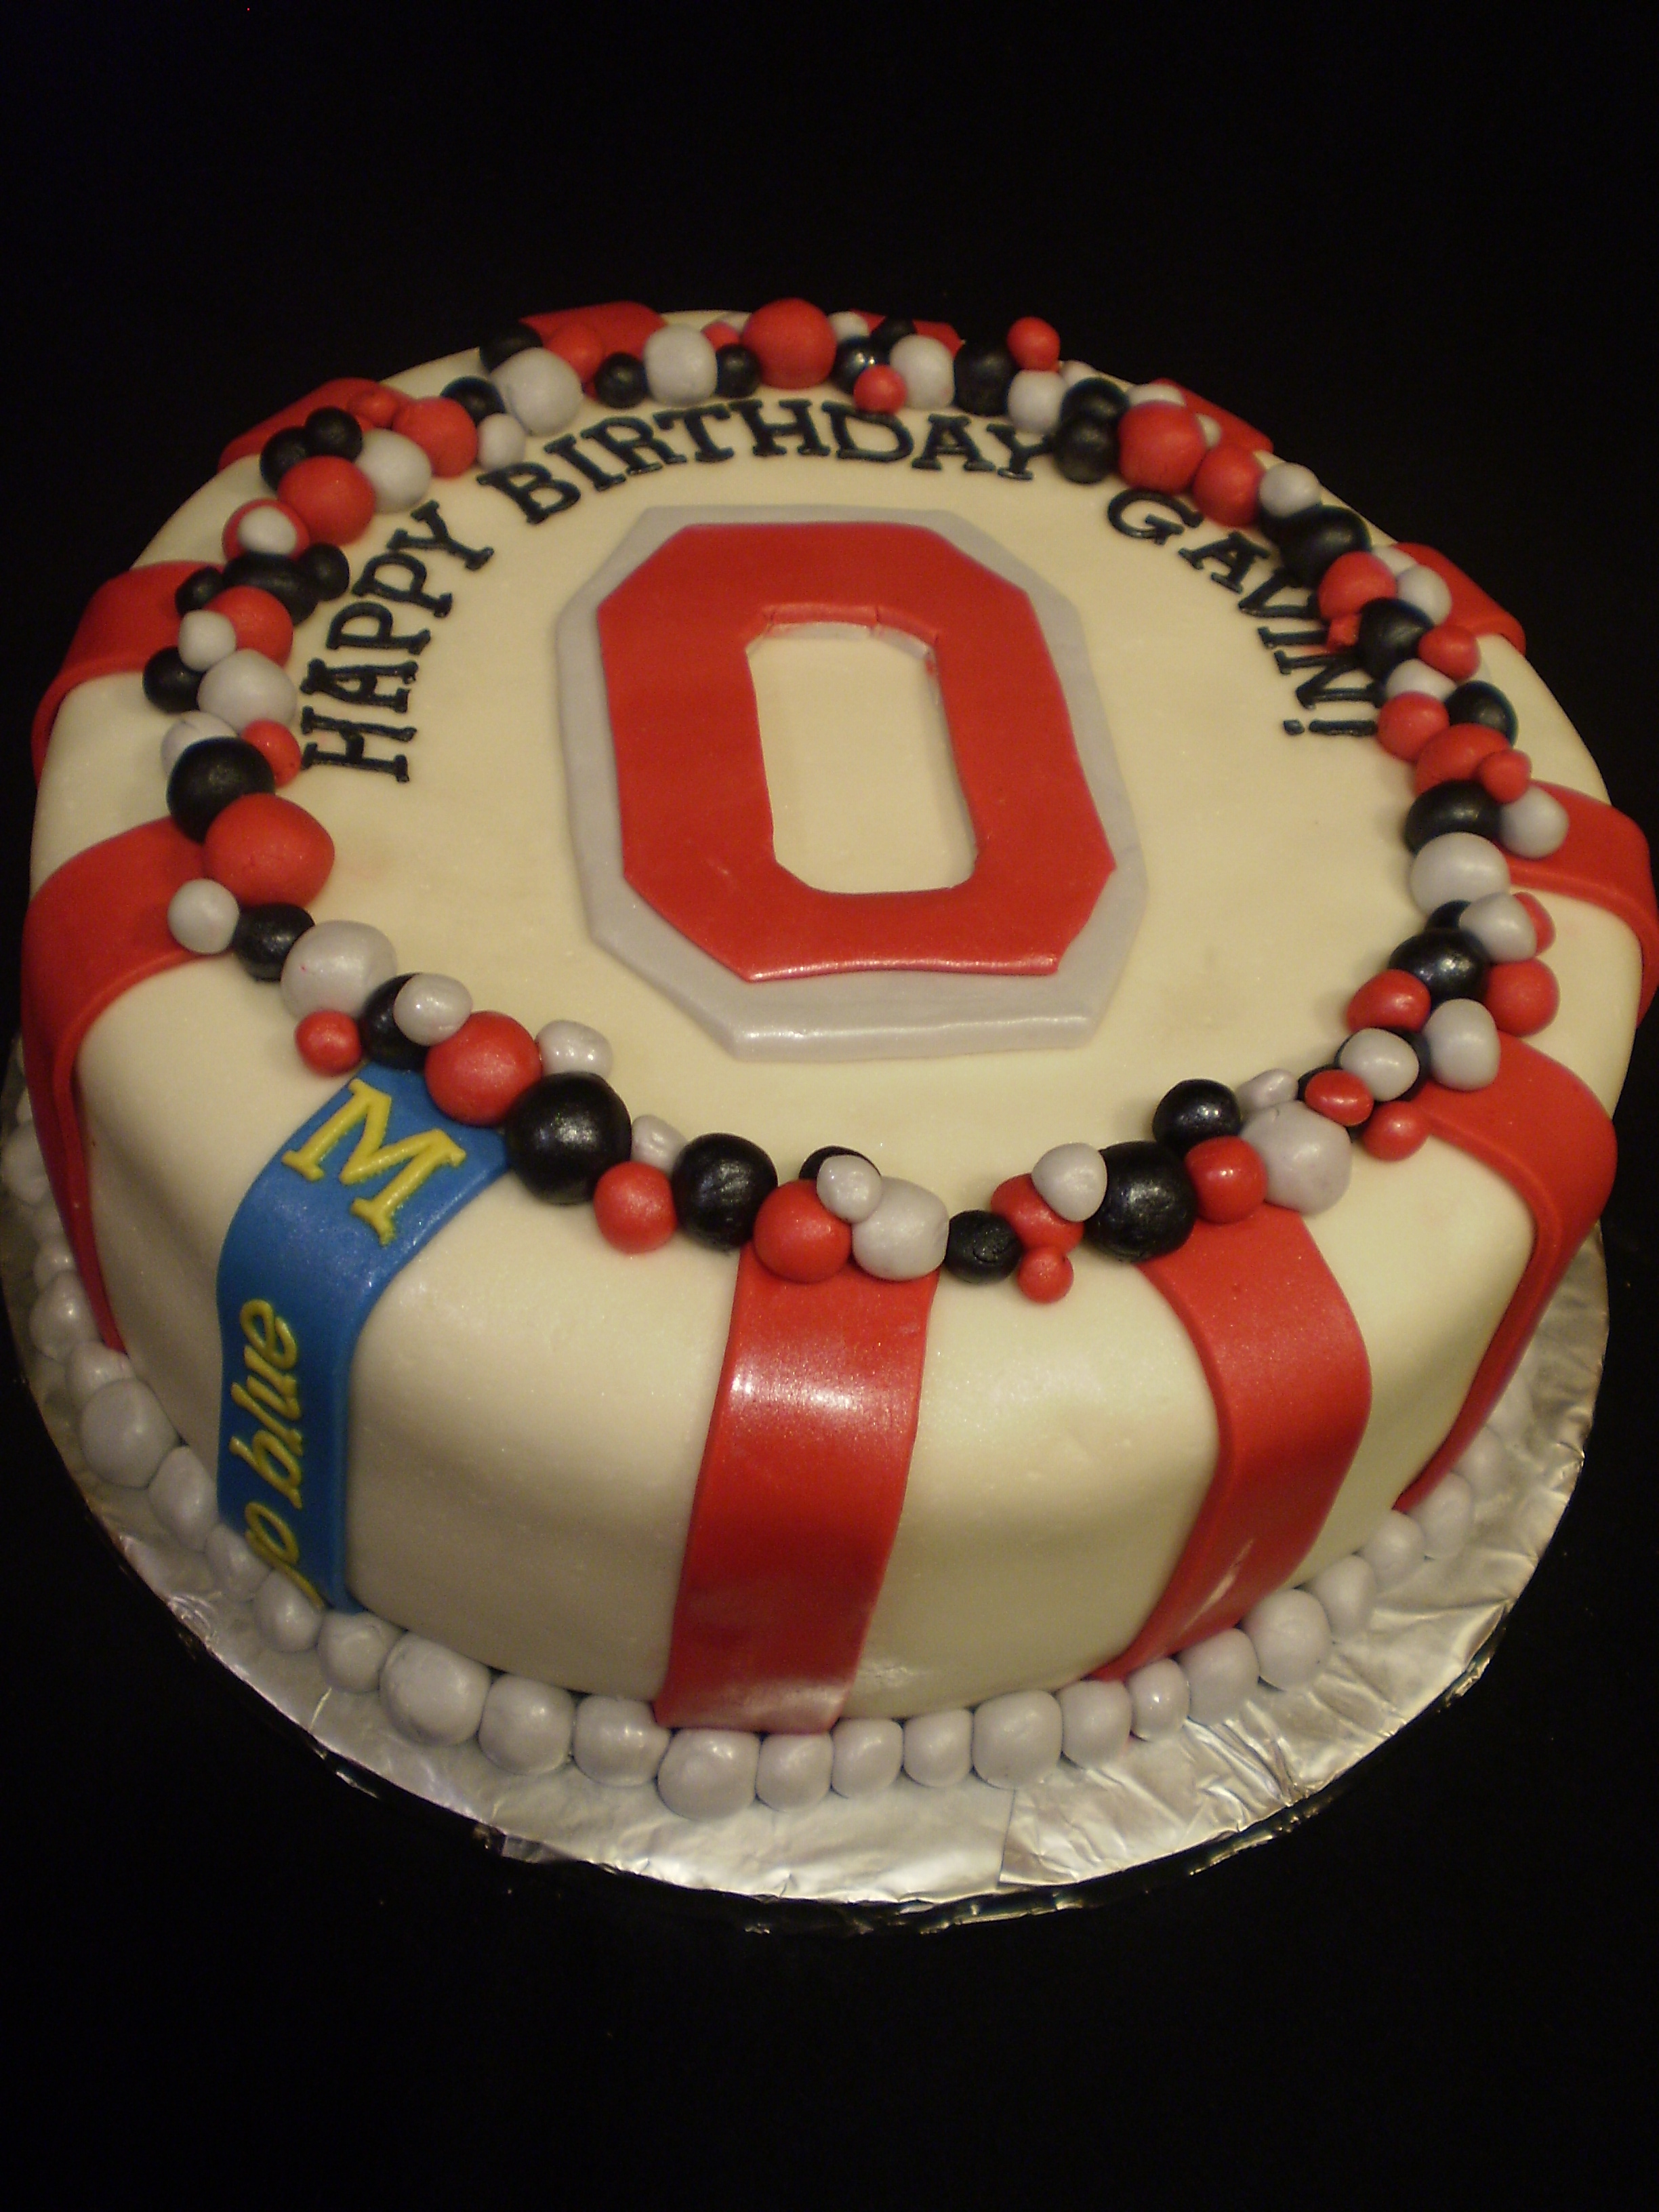 Michigan vs Ohio State Birthday Cake